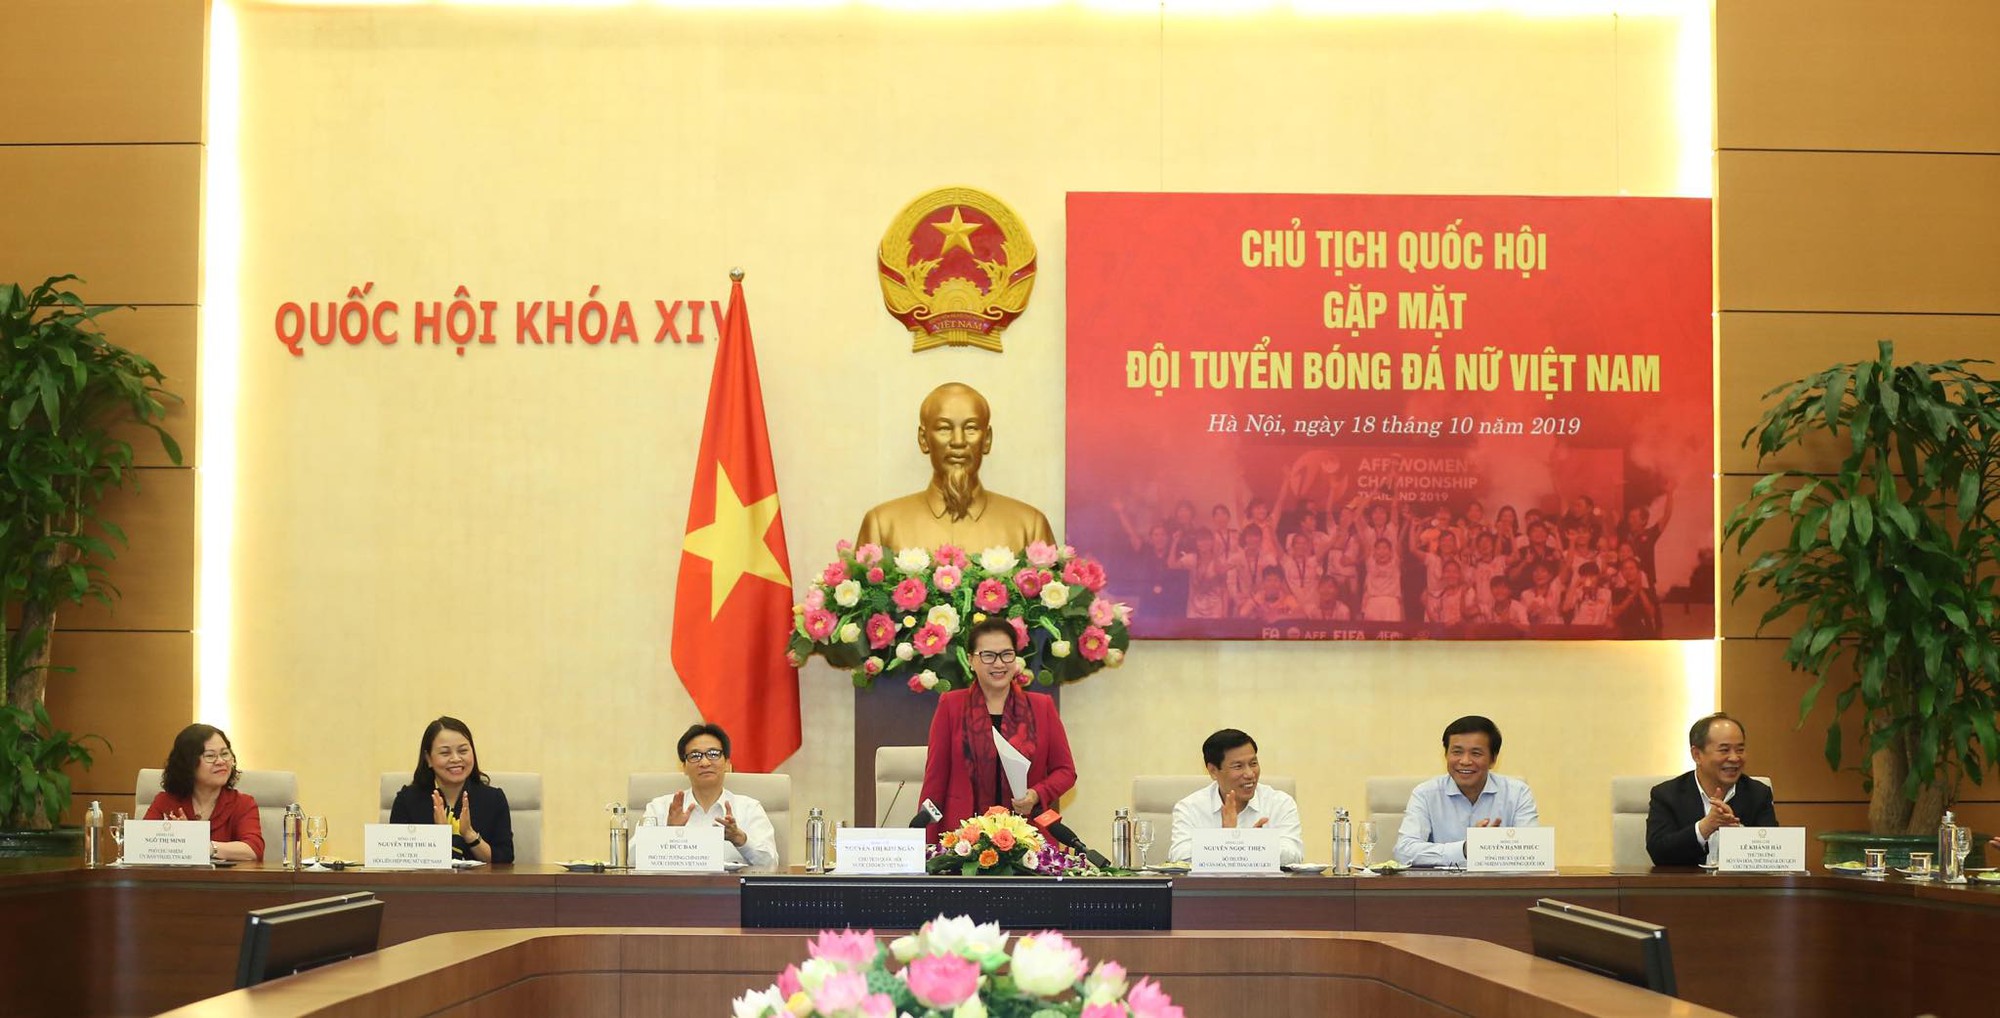 Chủ tịch Quốc hội tặng Iphone 11 cho đội tuyển bóng đá nữ Việt Nam